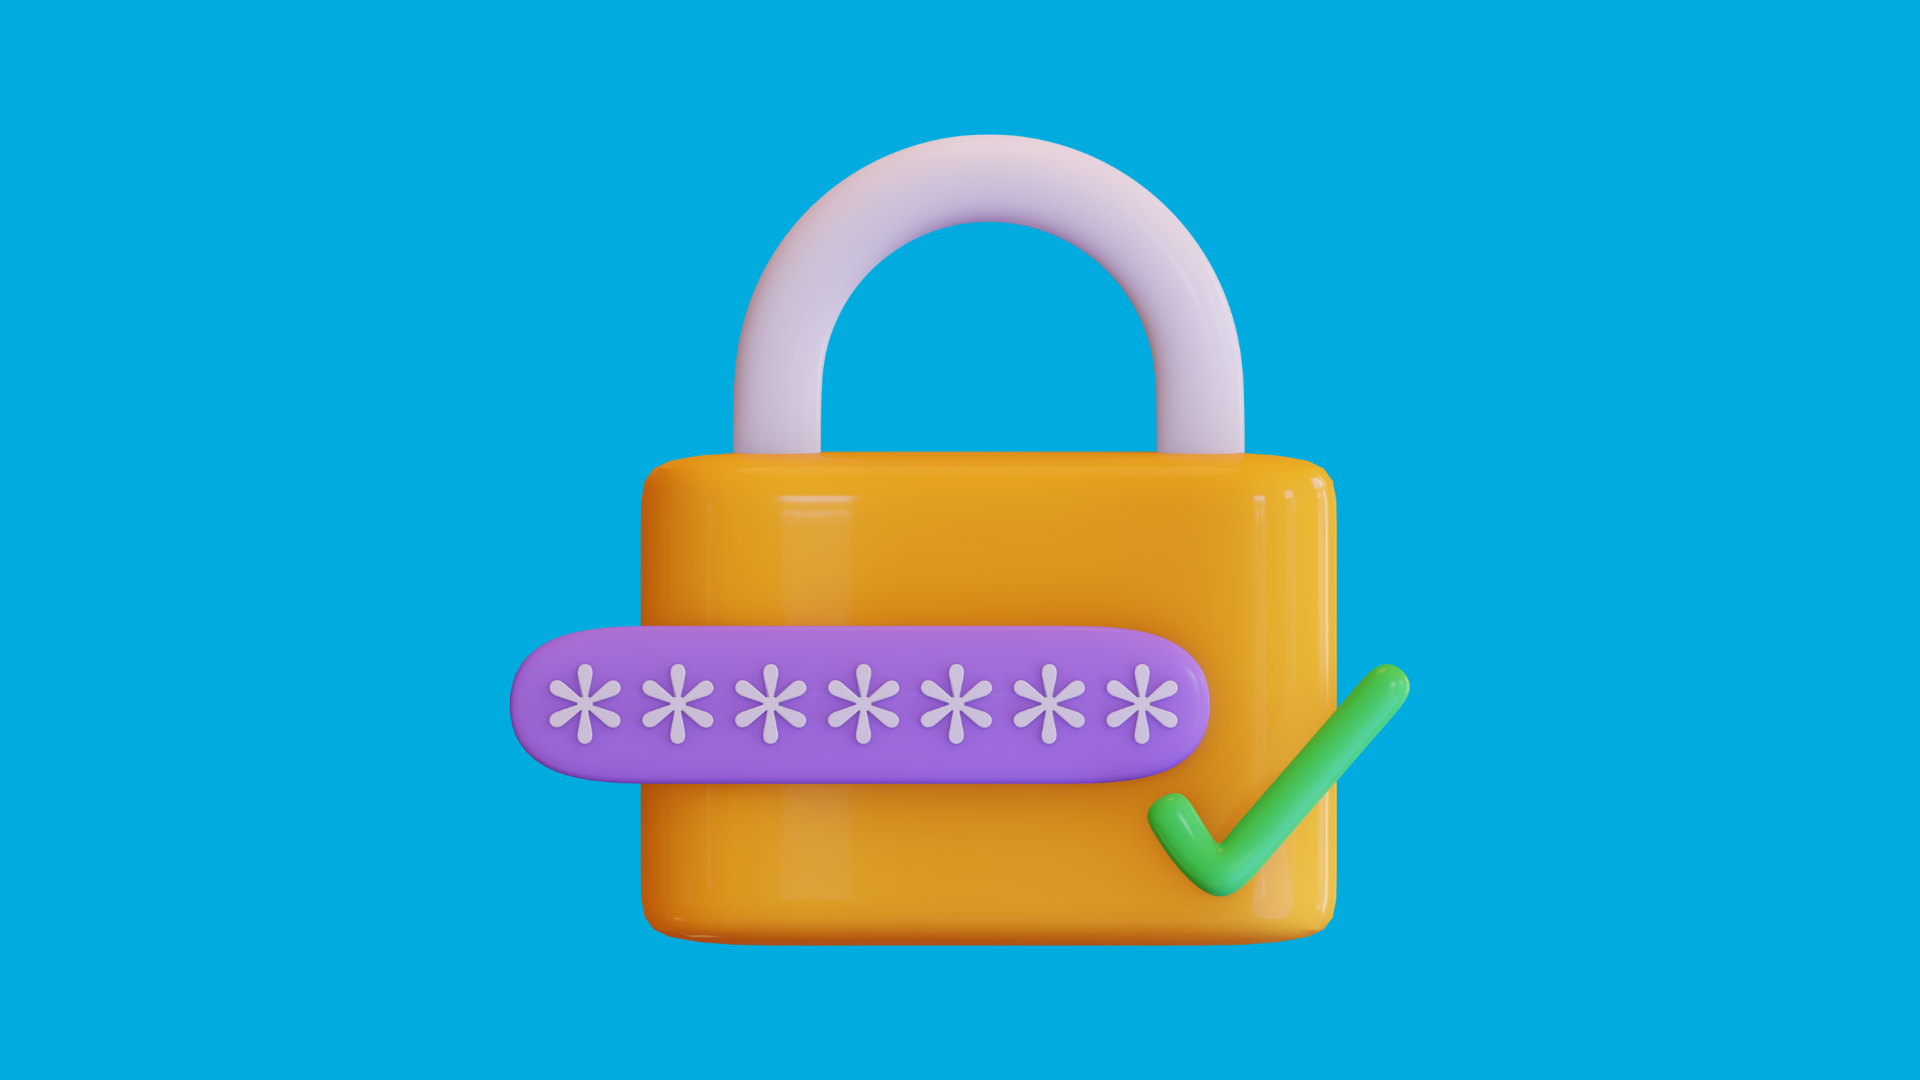 Seguridad PasswordSafe: Solución de Gestión de Contraseñas